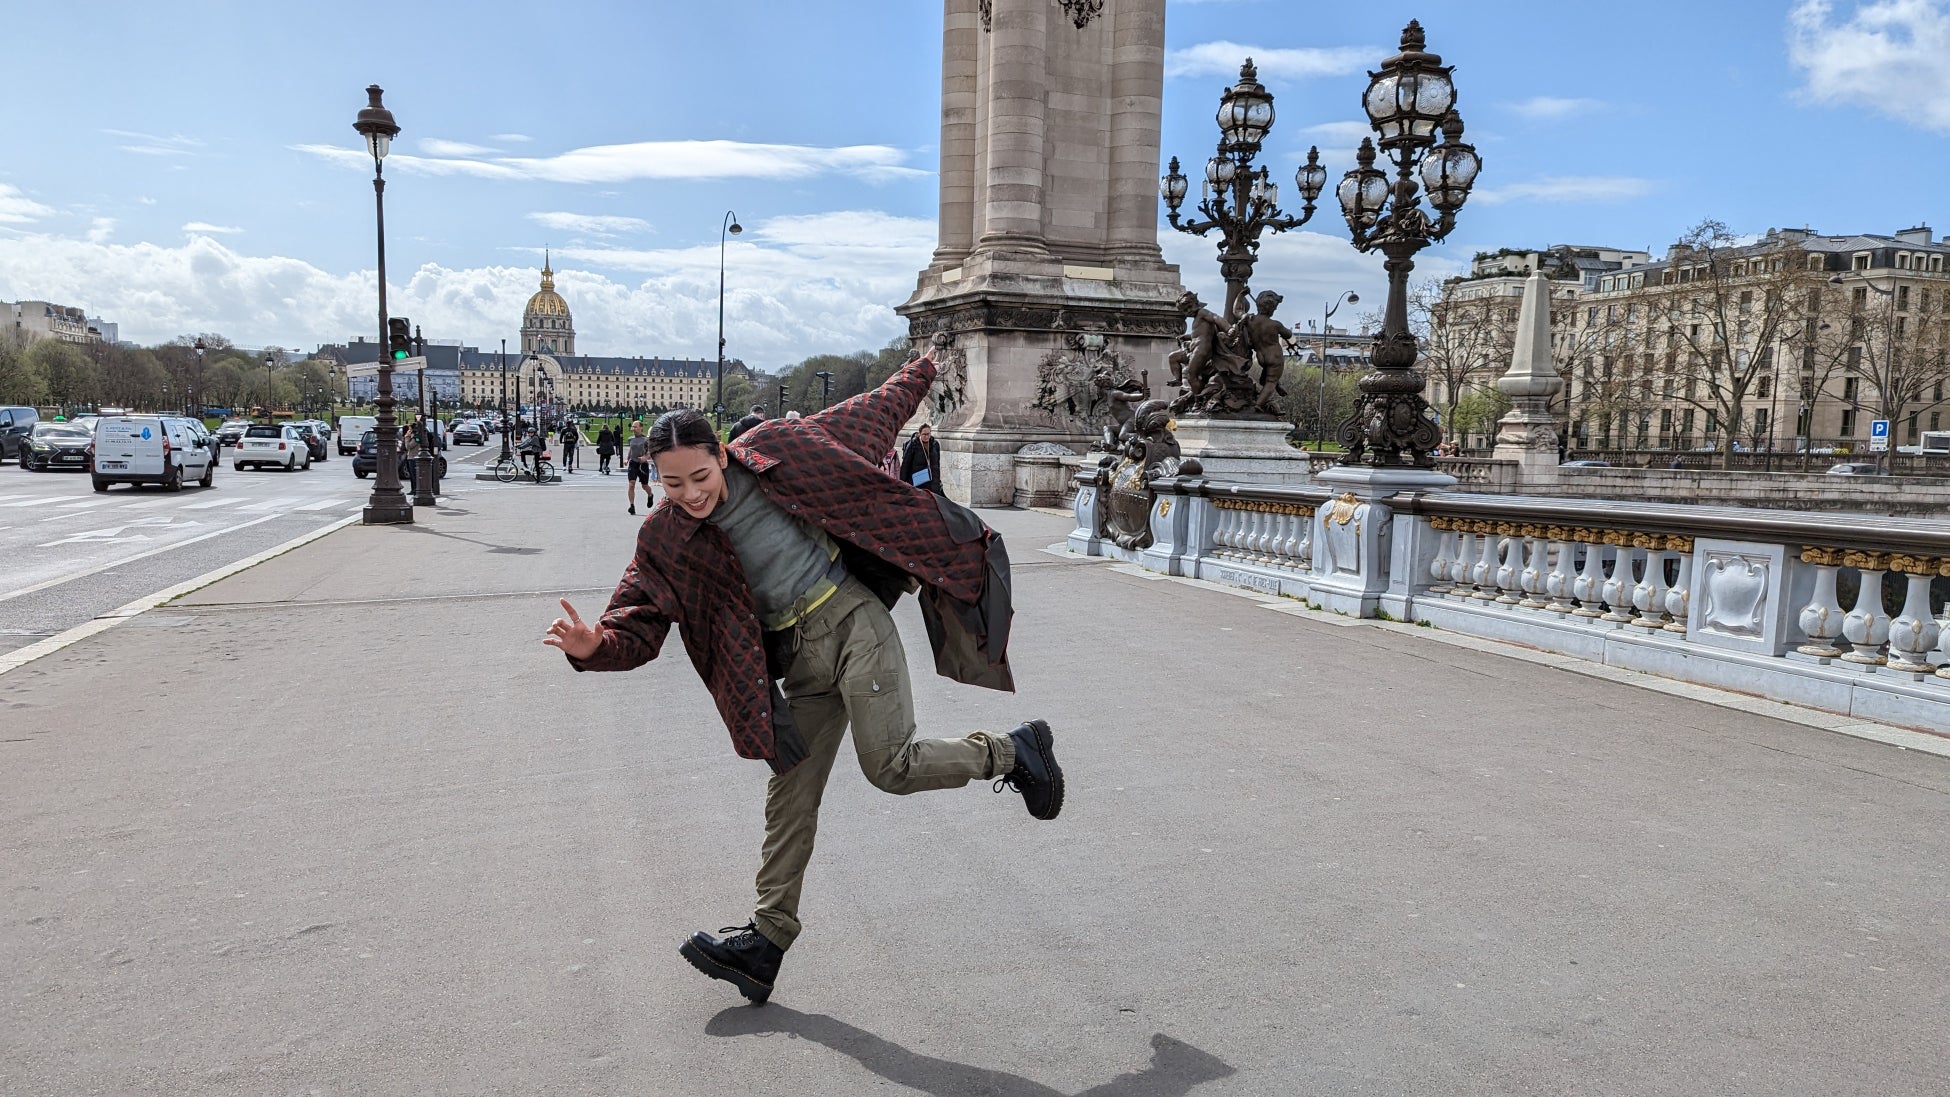 ストリートダンサーMiyuが「アナザースカイ」に初登場、「世界一のダンサーになる」夢を叶えたフランス・パリへ。ダンサーの社会的な地位向上にかける想いを語る。